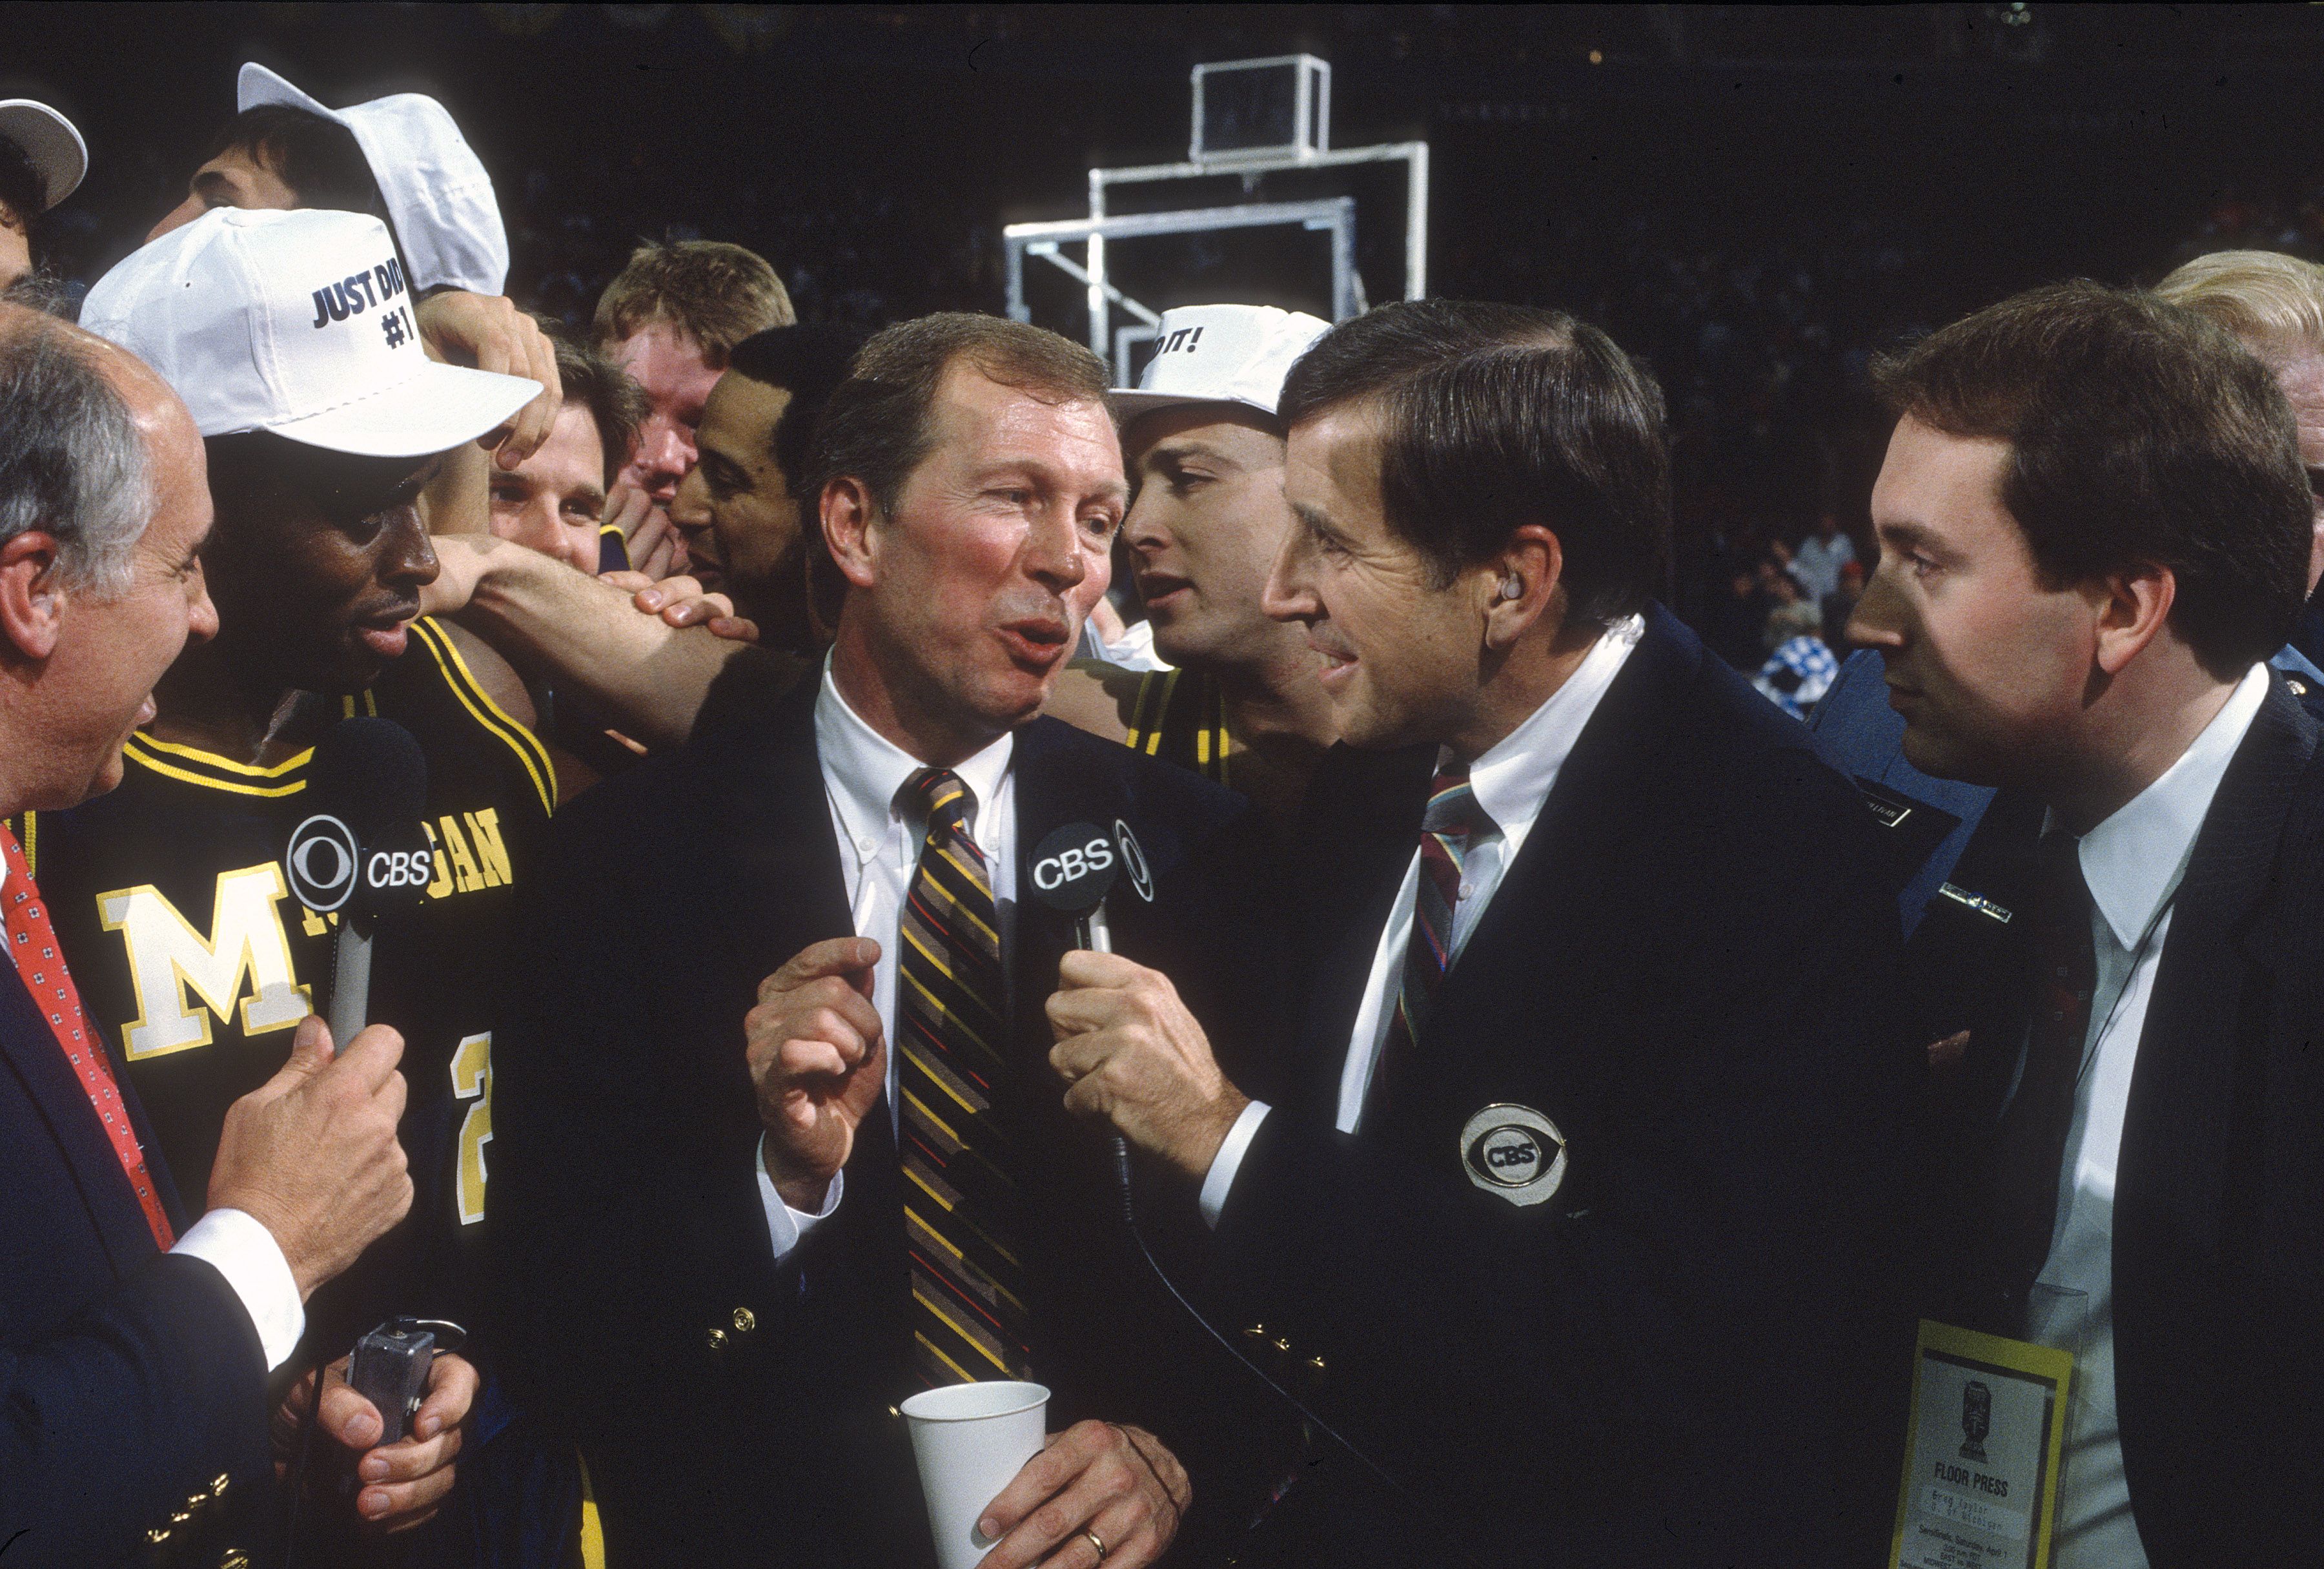 Brent Musburger interviews Michigan coach Steve Fisher